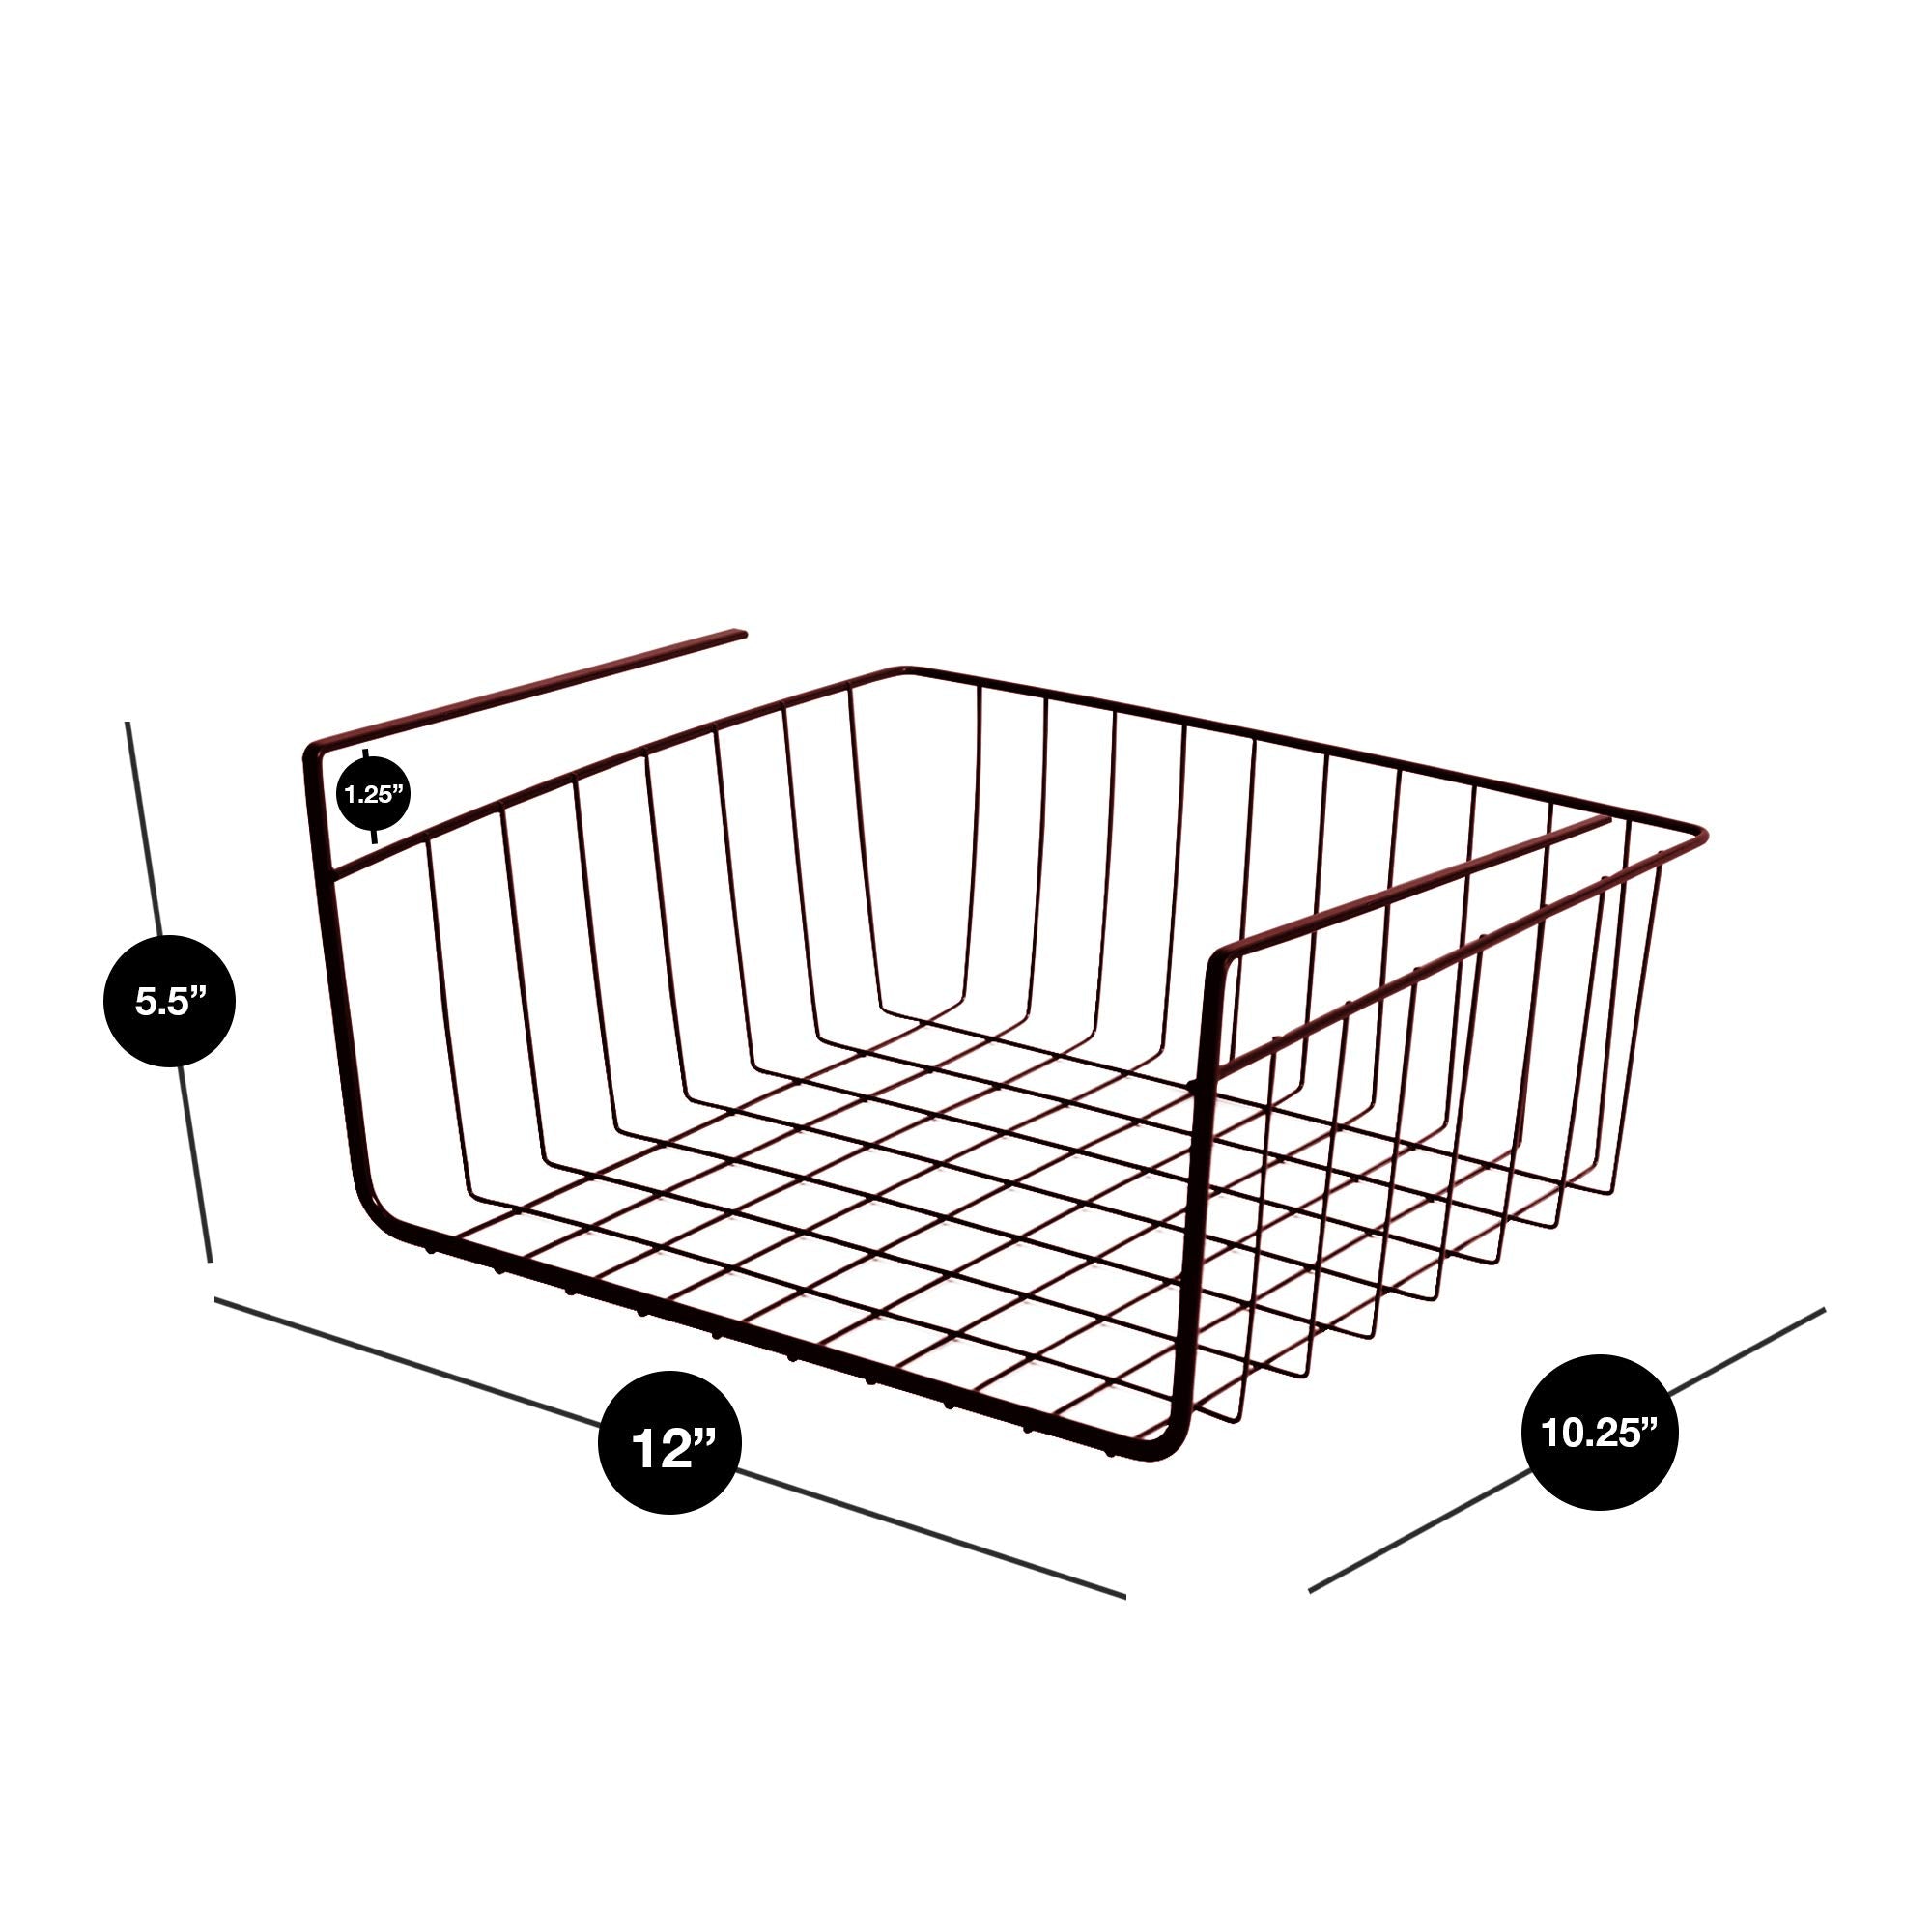 Smart Design White Wire Undershelf Basket Medium